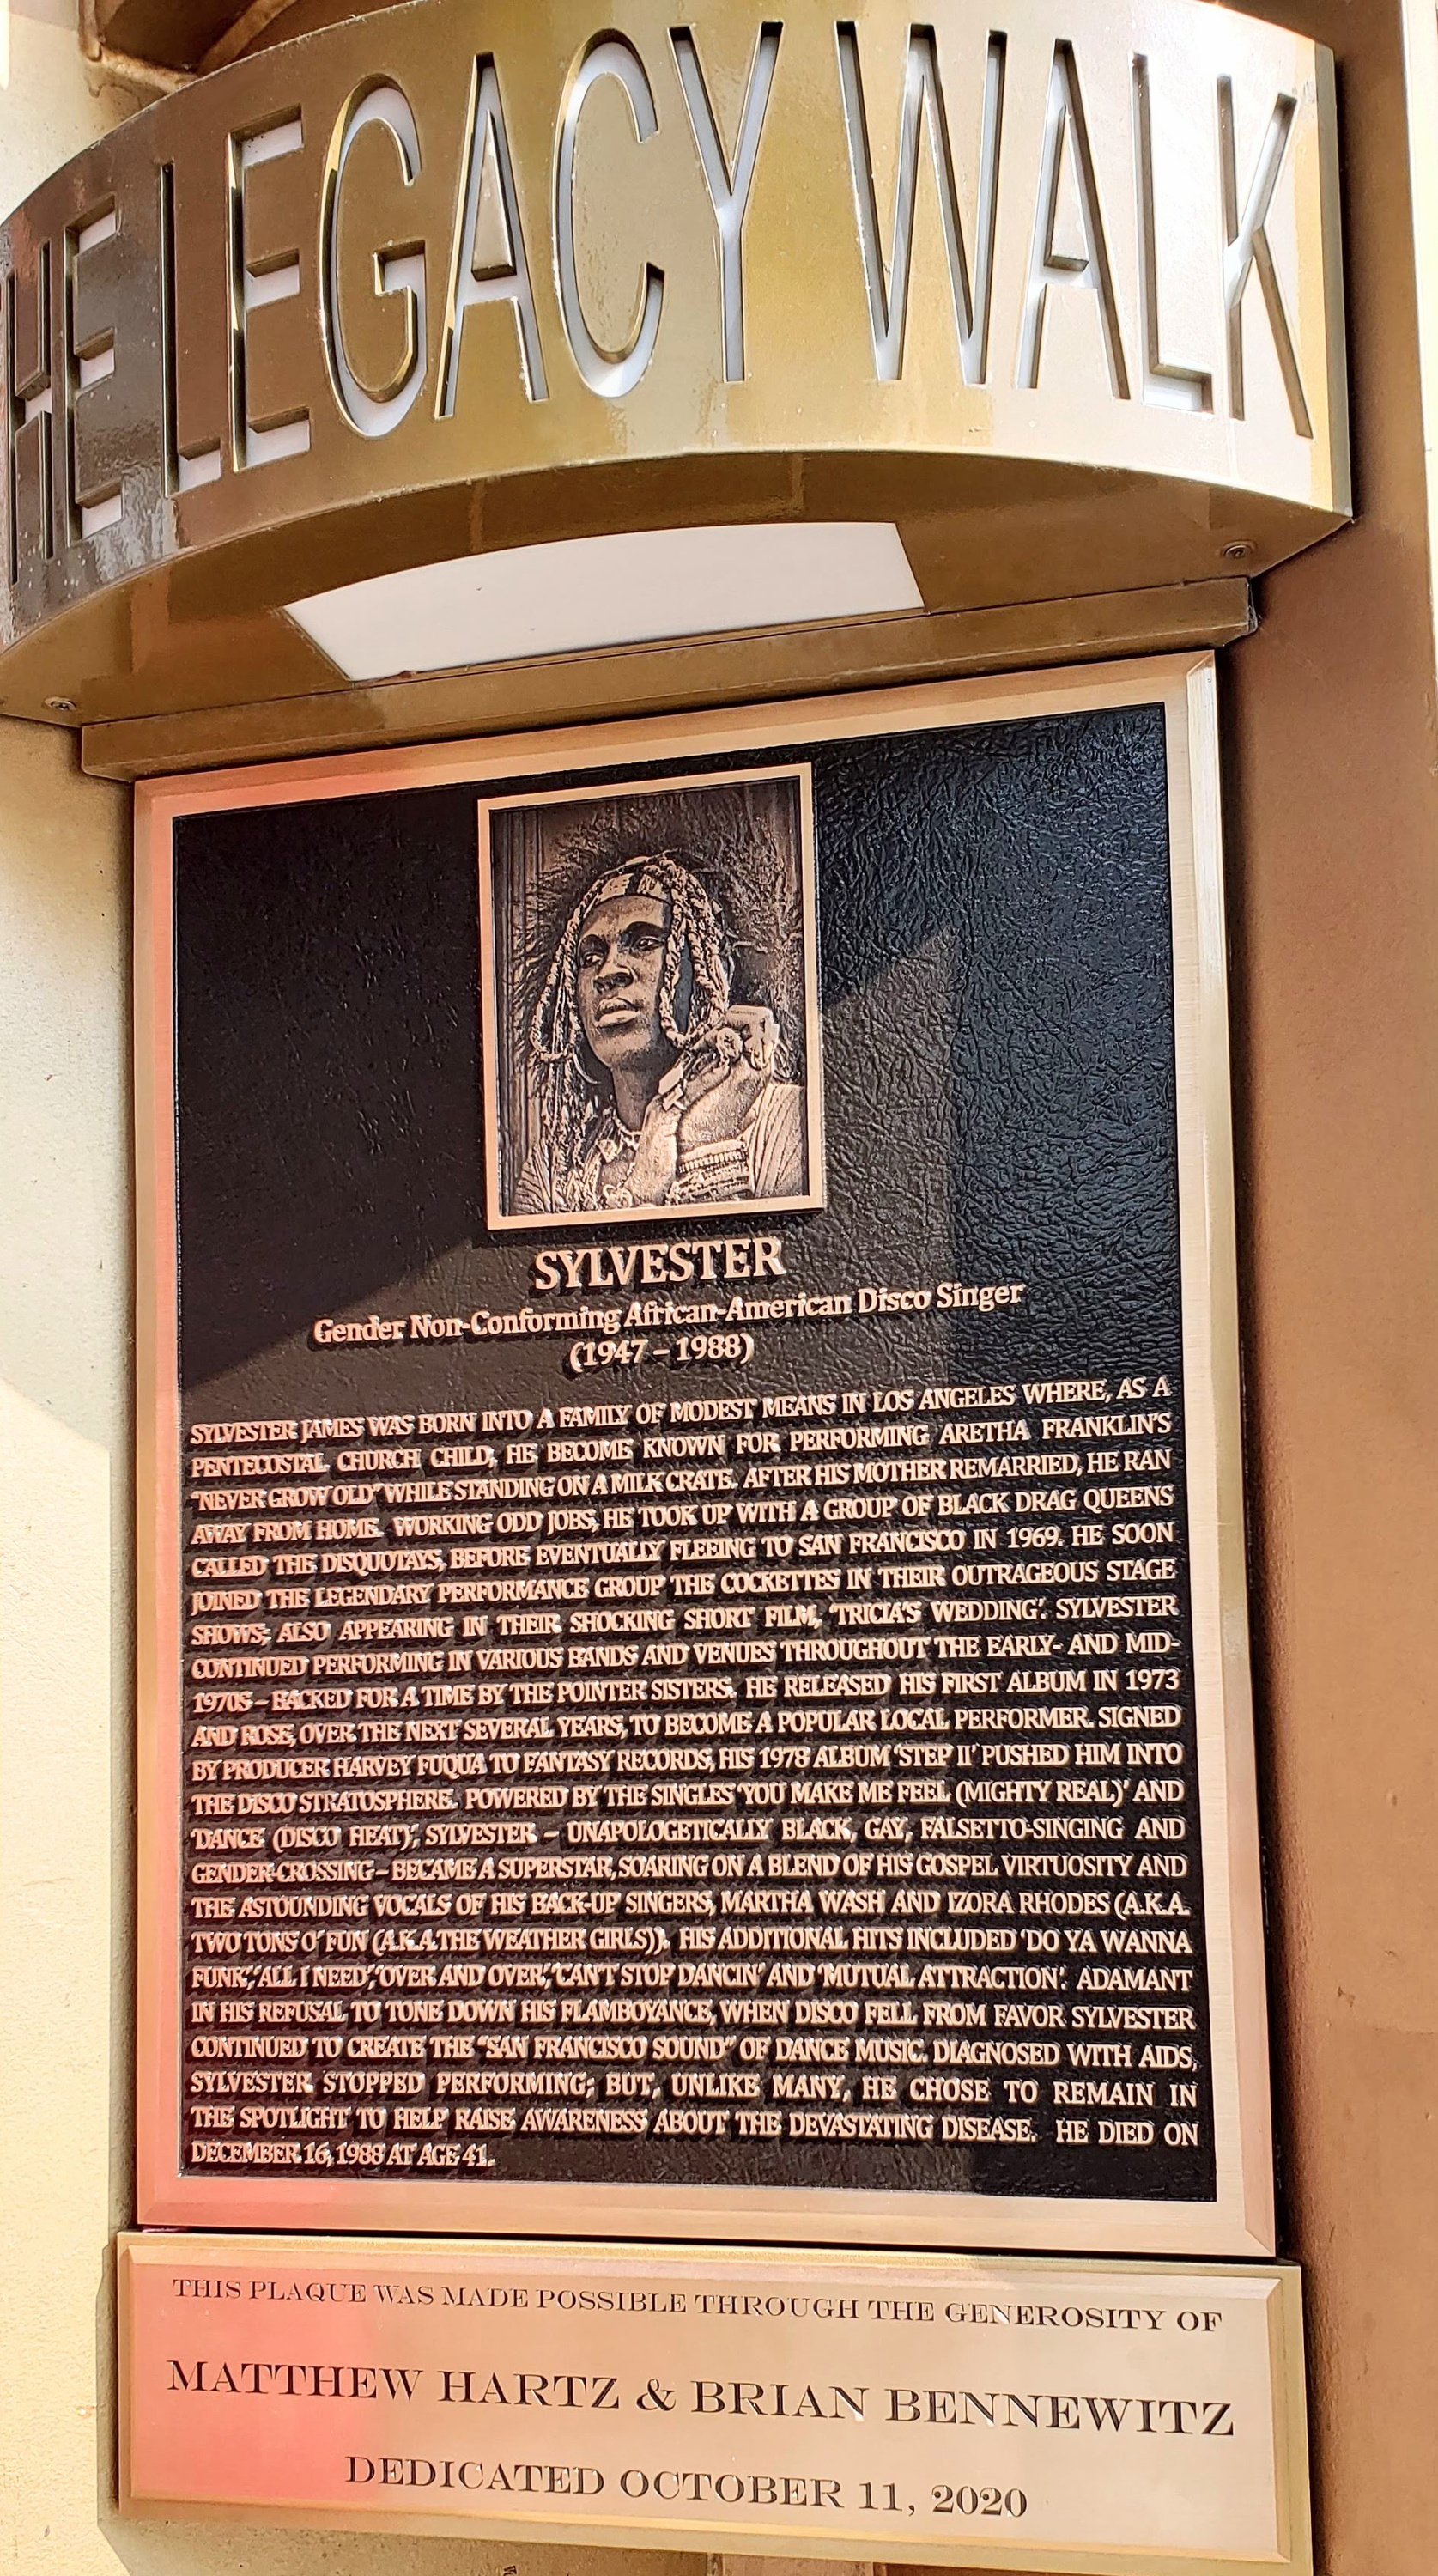 Sylvester Legacy Walk Bronze Memorial